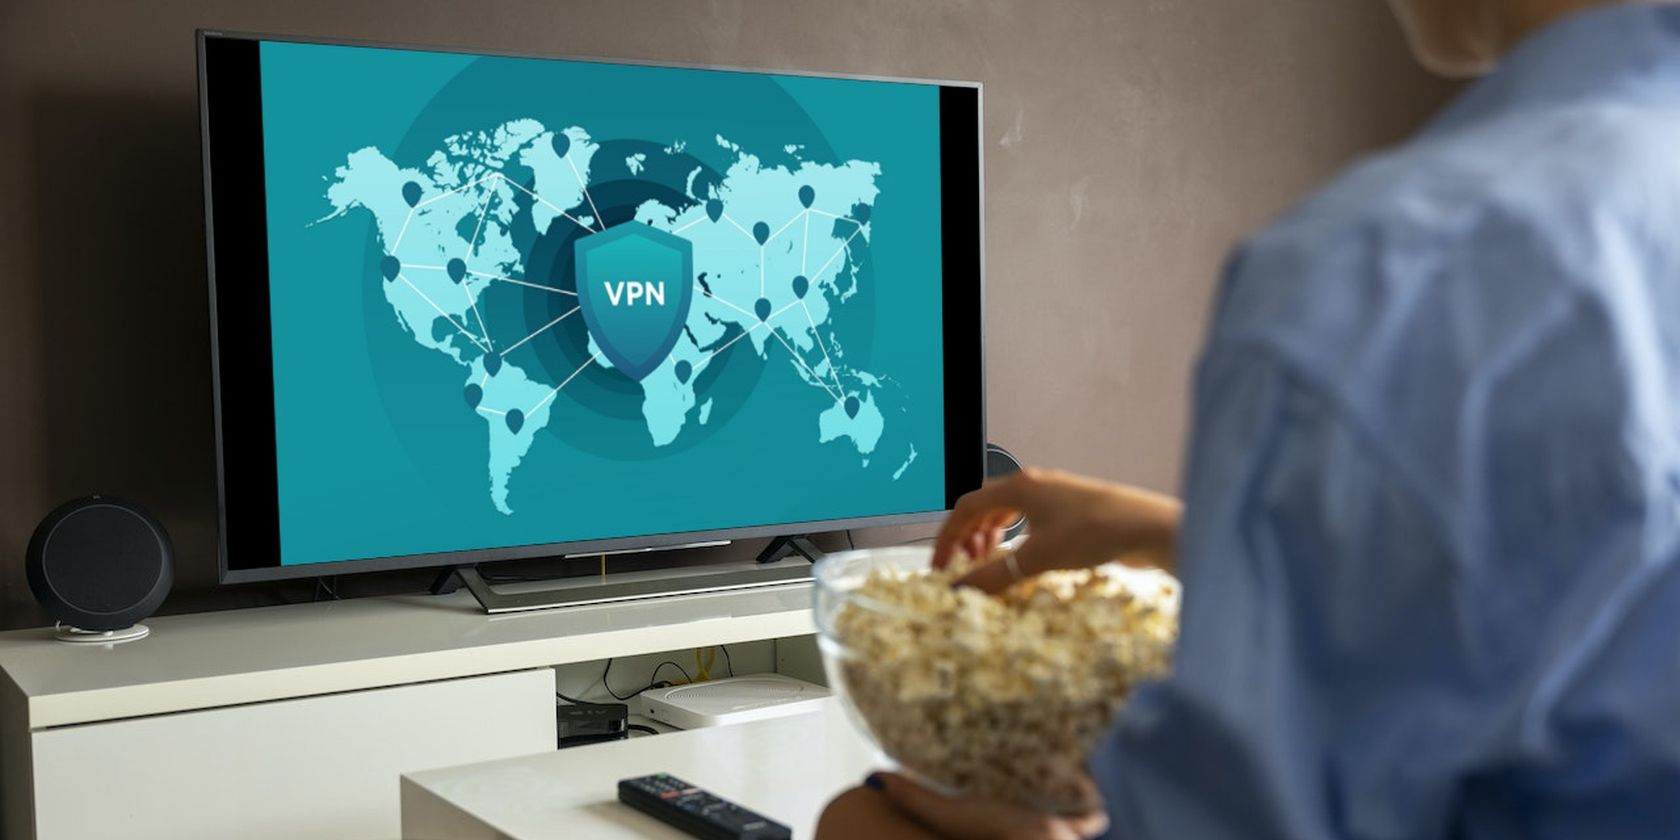 VPN displayed on a smart TV